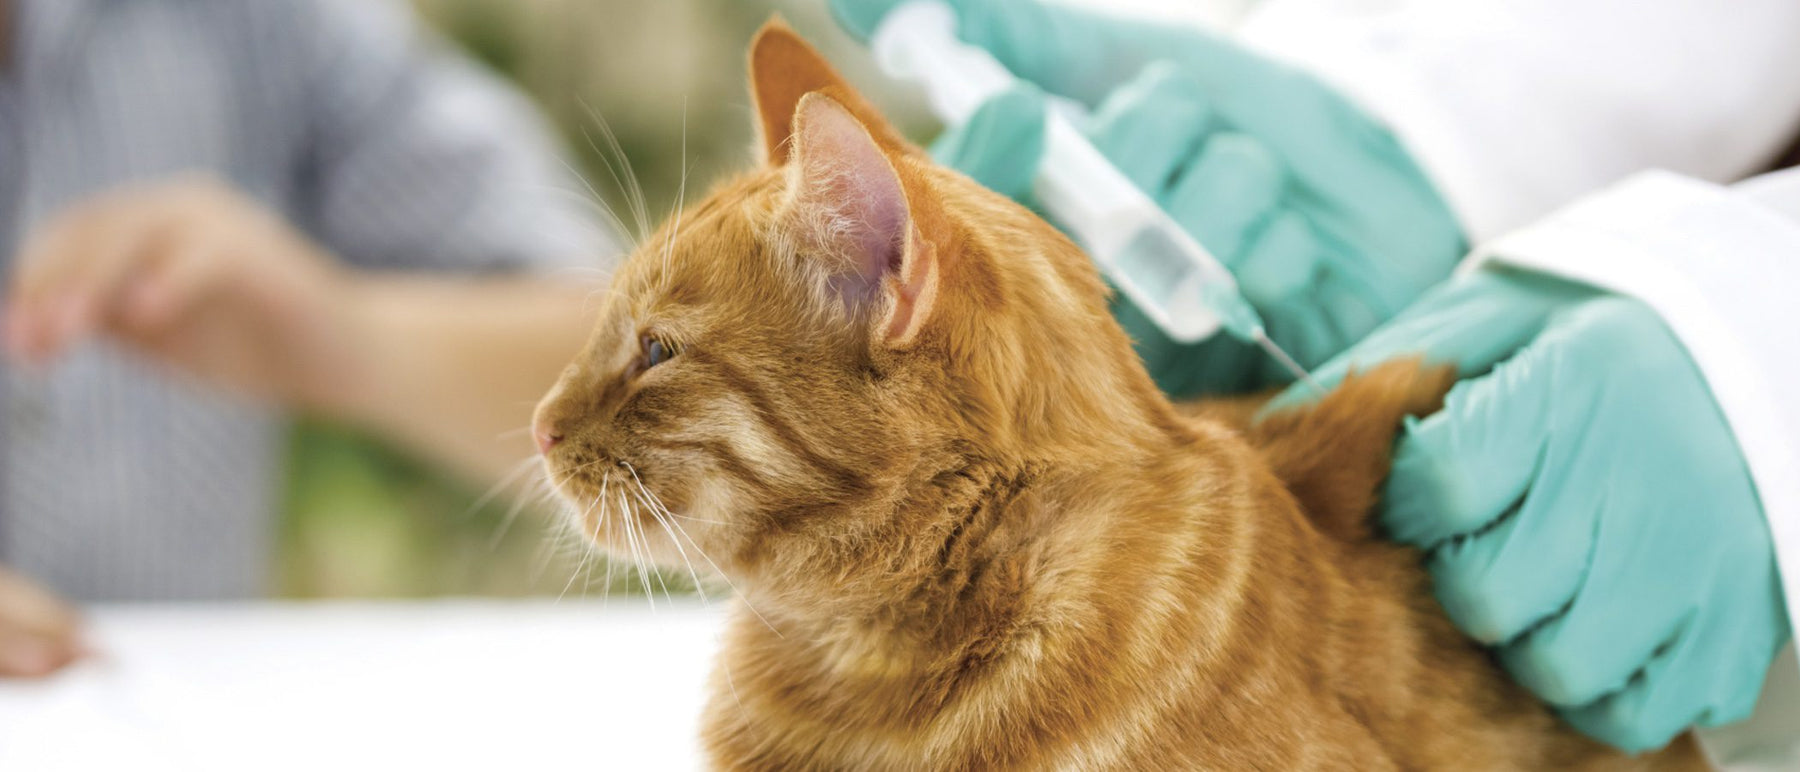 Síntomas de rabia en gatos ¿Sabes cuales son y cómo identificarlos?